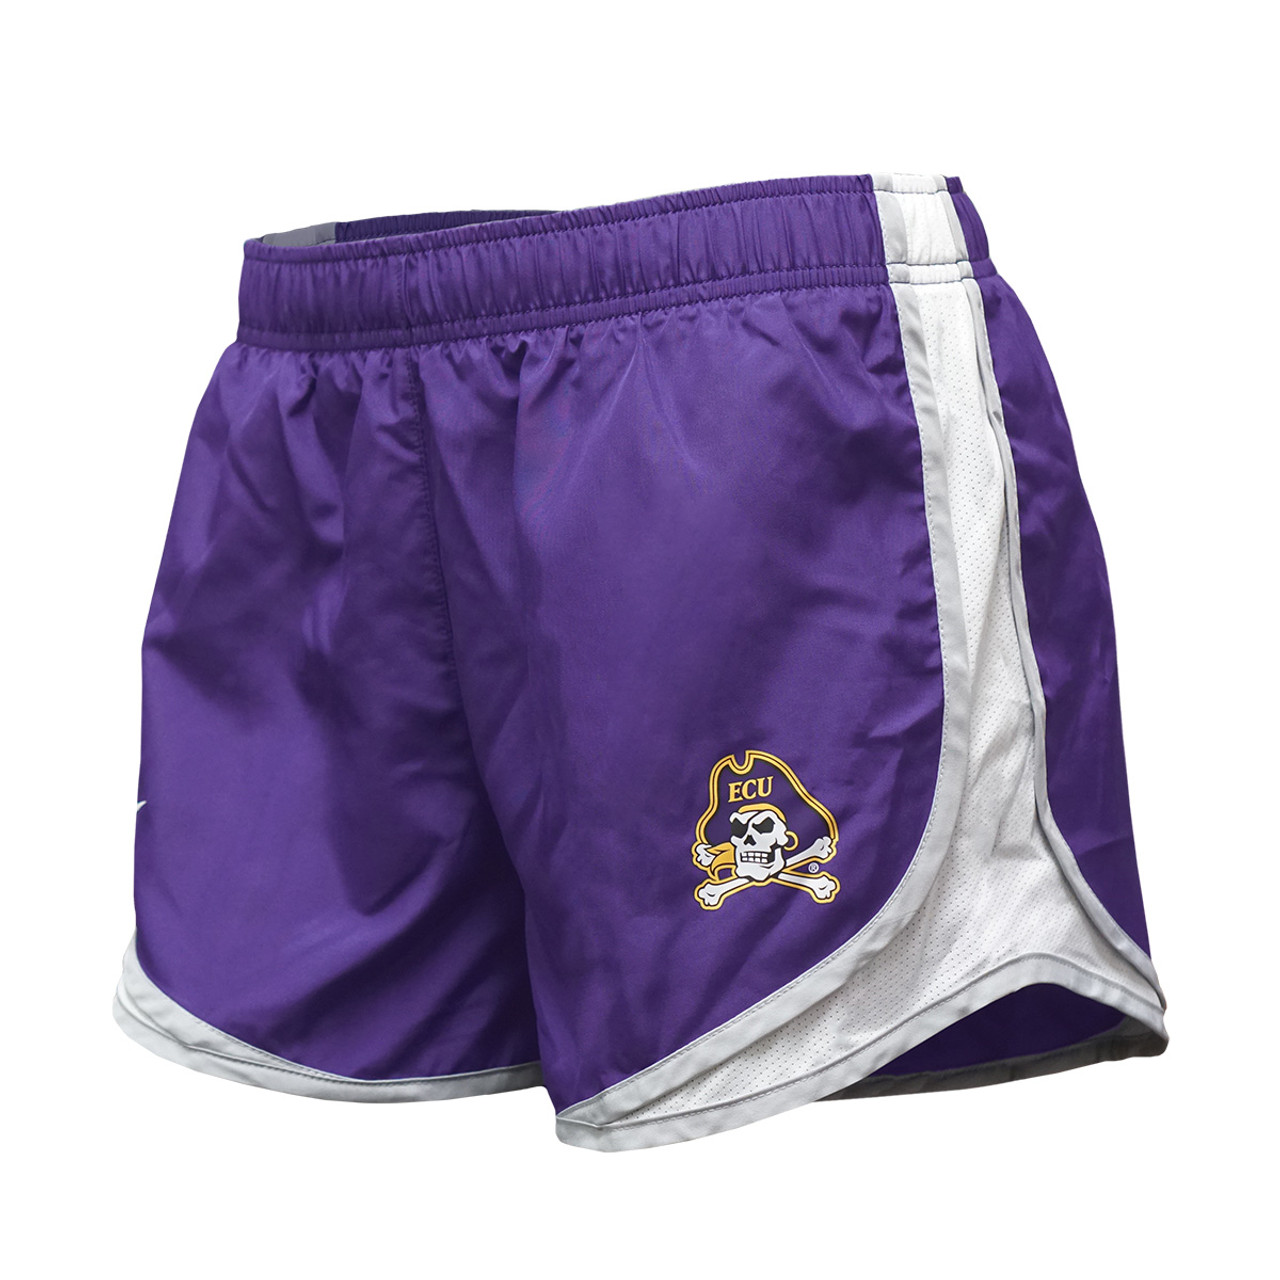 purple nike tempo shorts